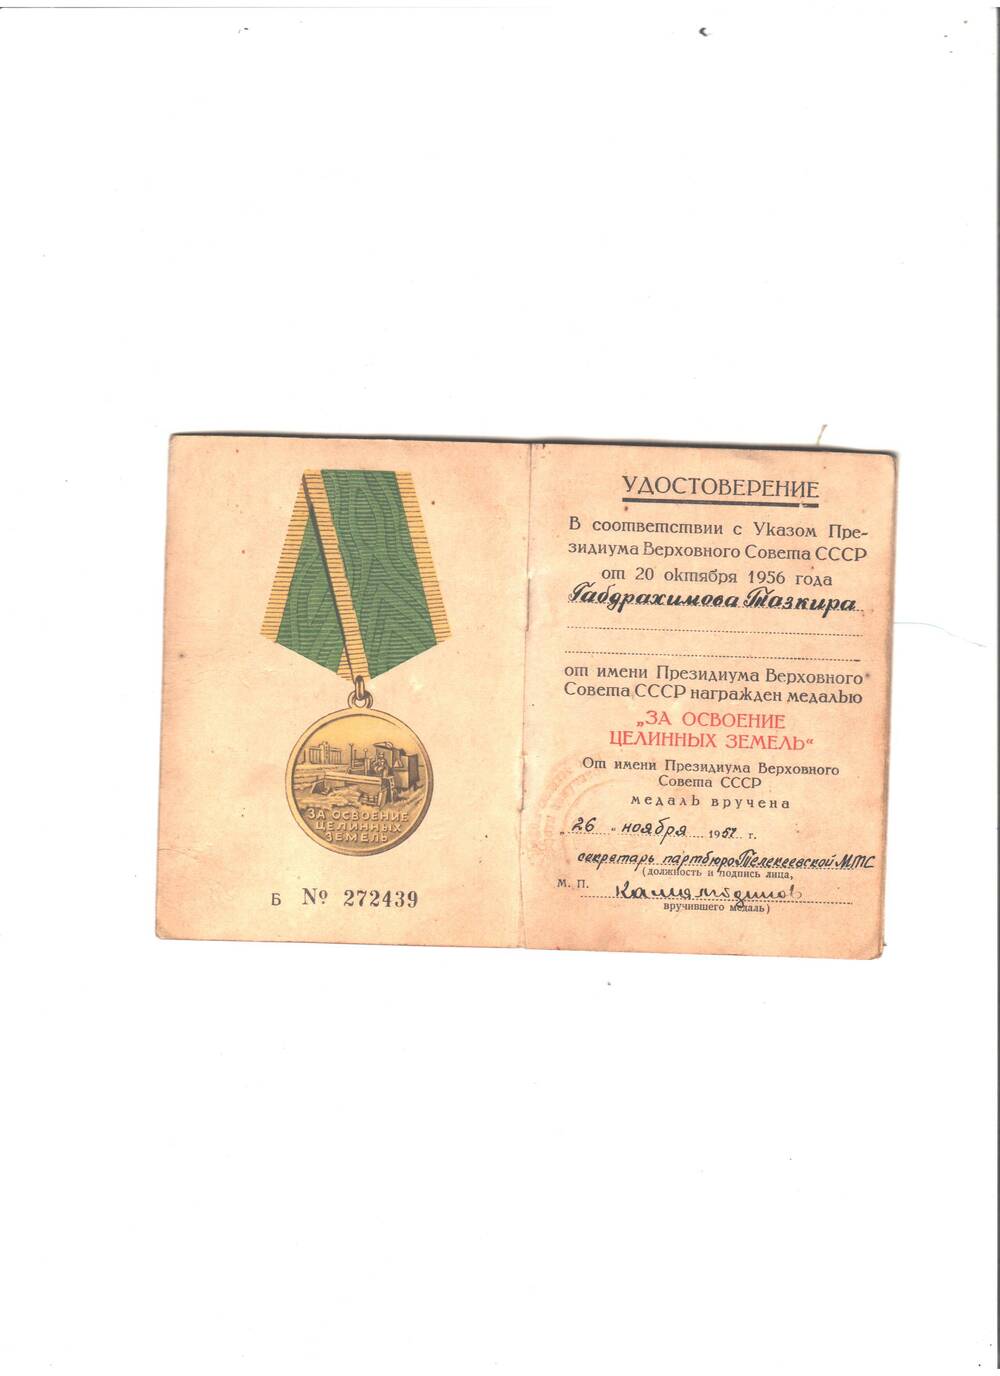 Удостоверение к медали За освоение целиных земель от 20. 10. 1956 г. Габдрахимовой Т., медаль вручена 26.11.1957